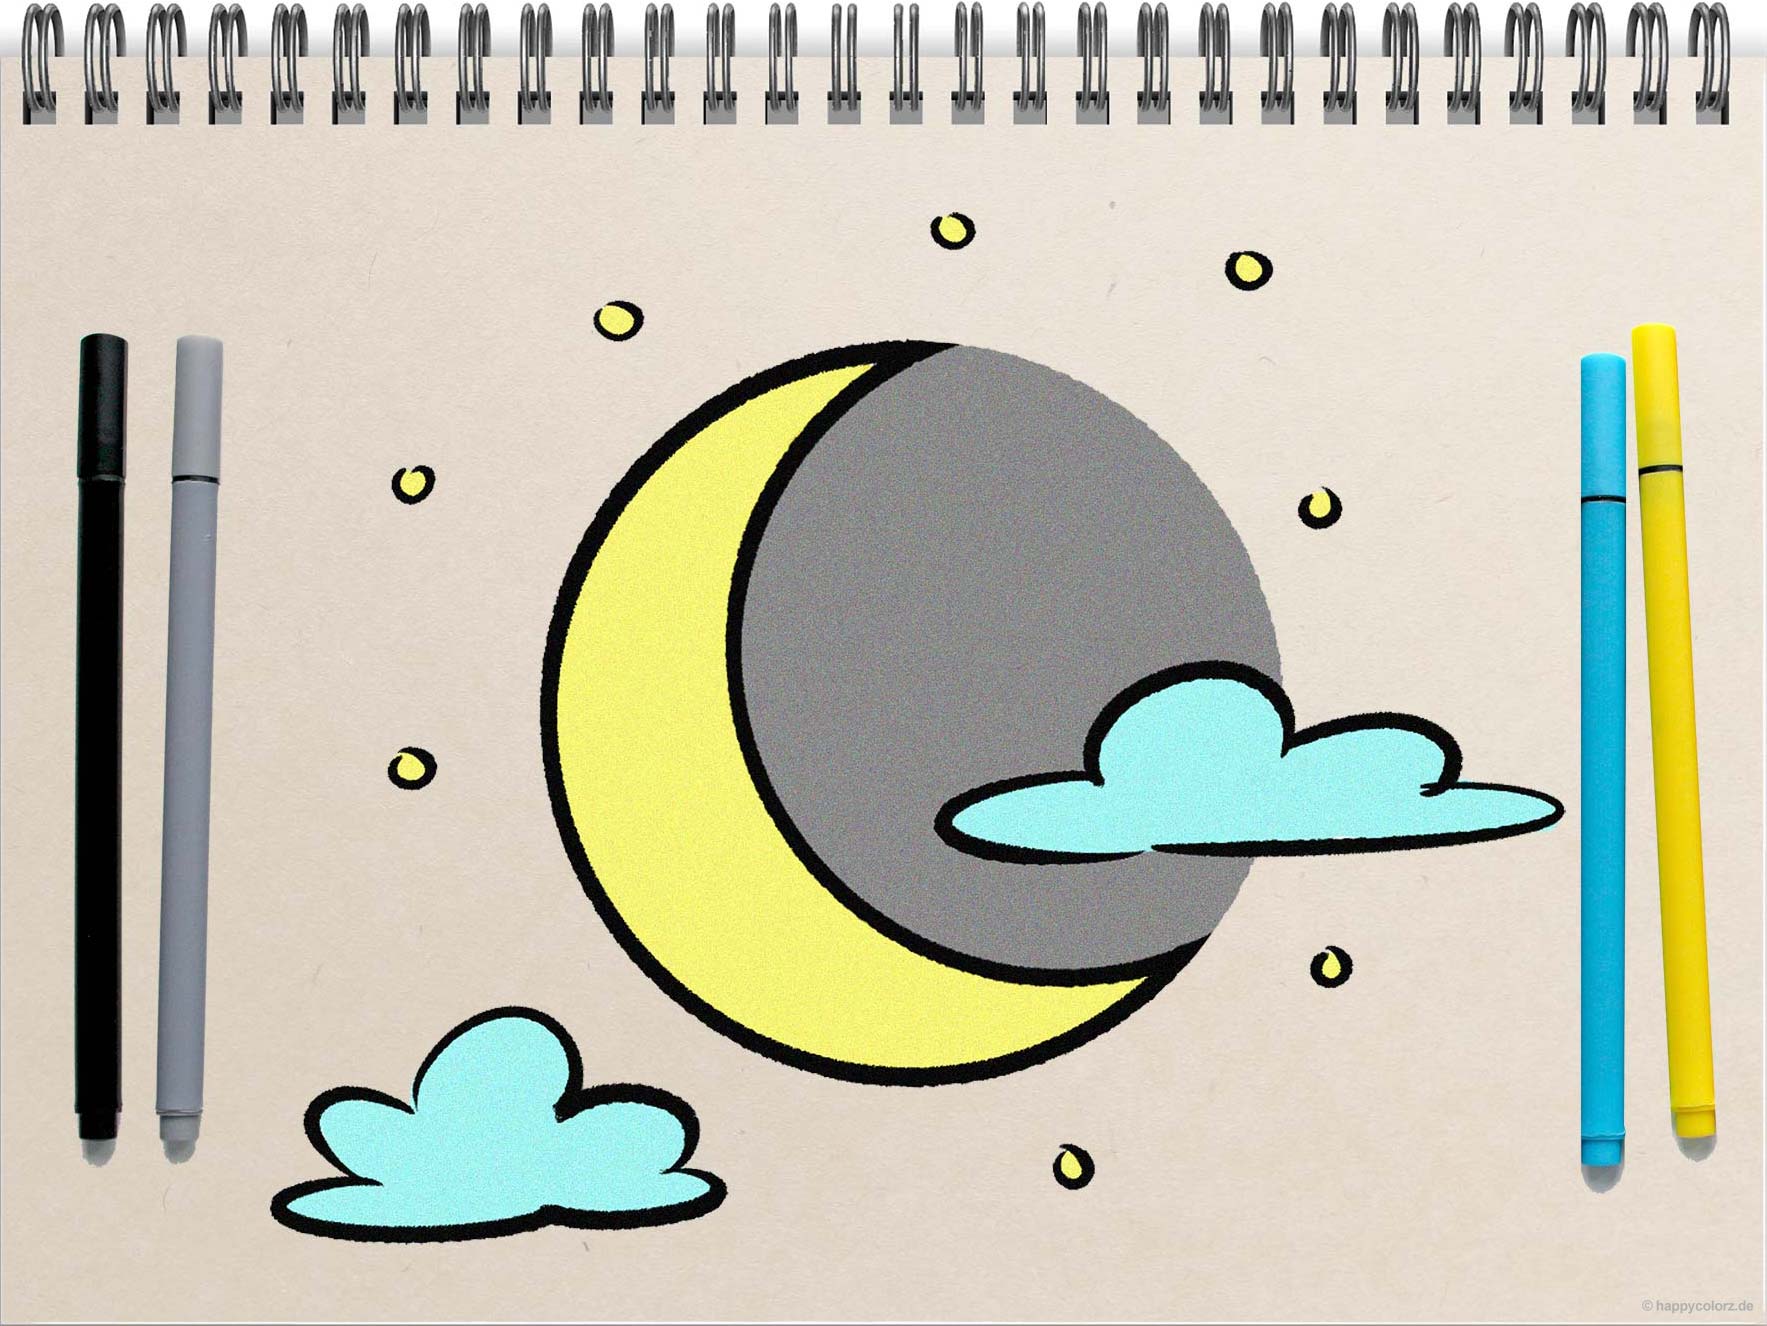 Mond zeichnen - Schritt für Schritt